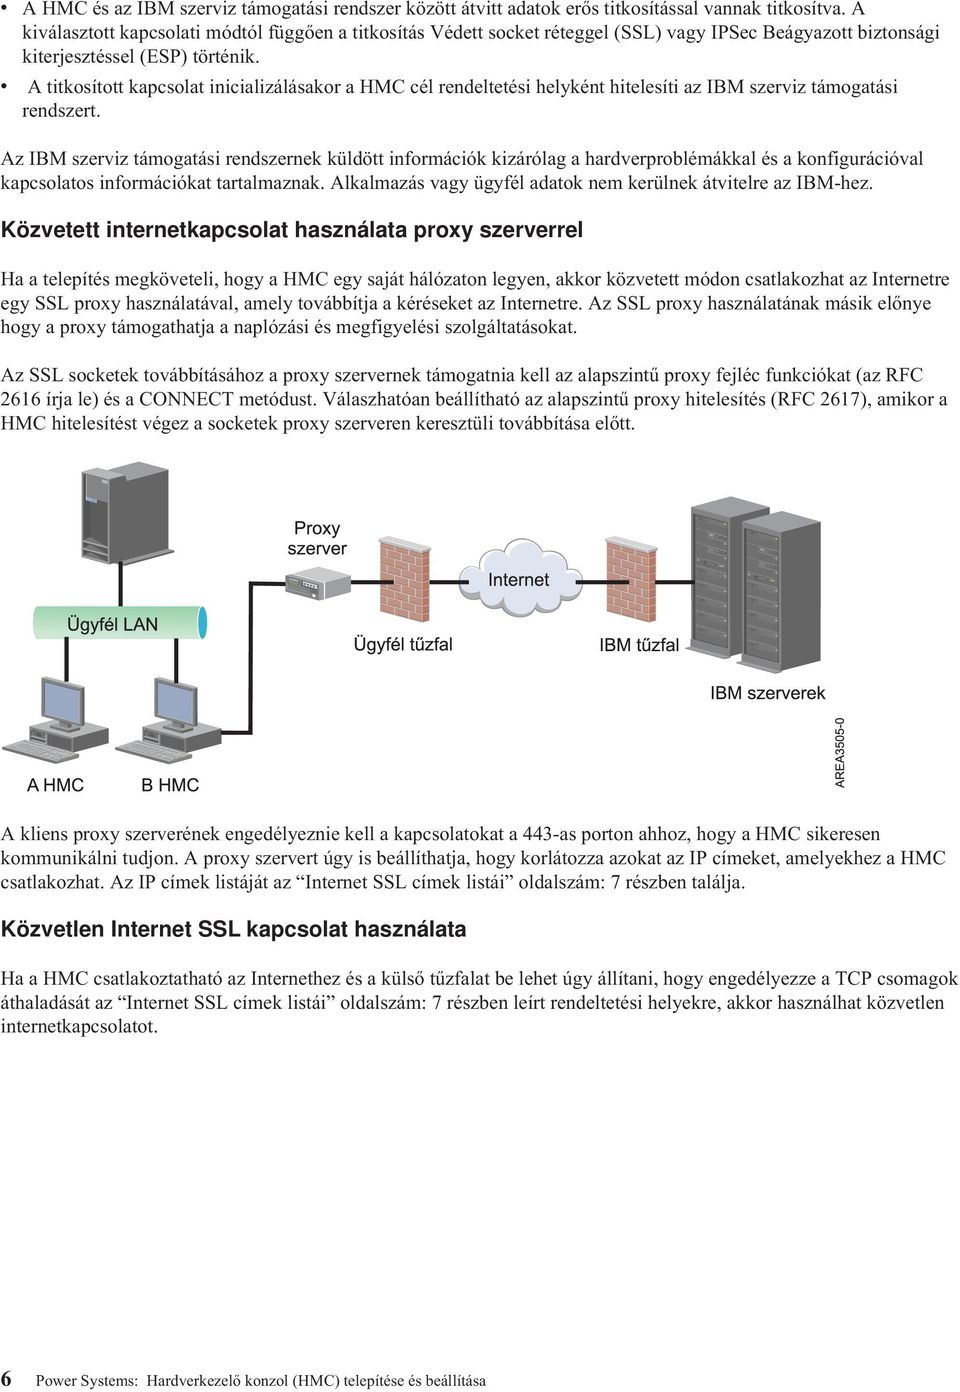 v A titkosított kapcsolat inicializálásakor a HMC cél rendeltetési helyként hitelesíti az IBM szerviz támogatási rendszert.